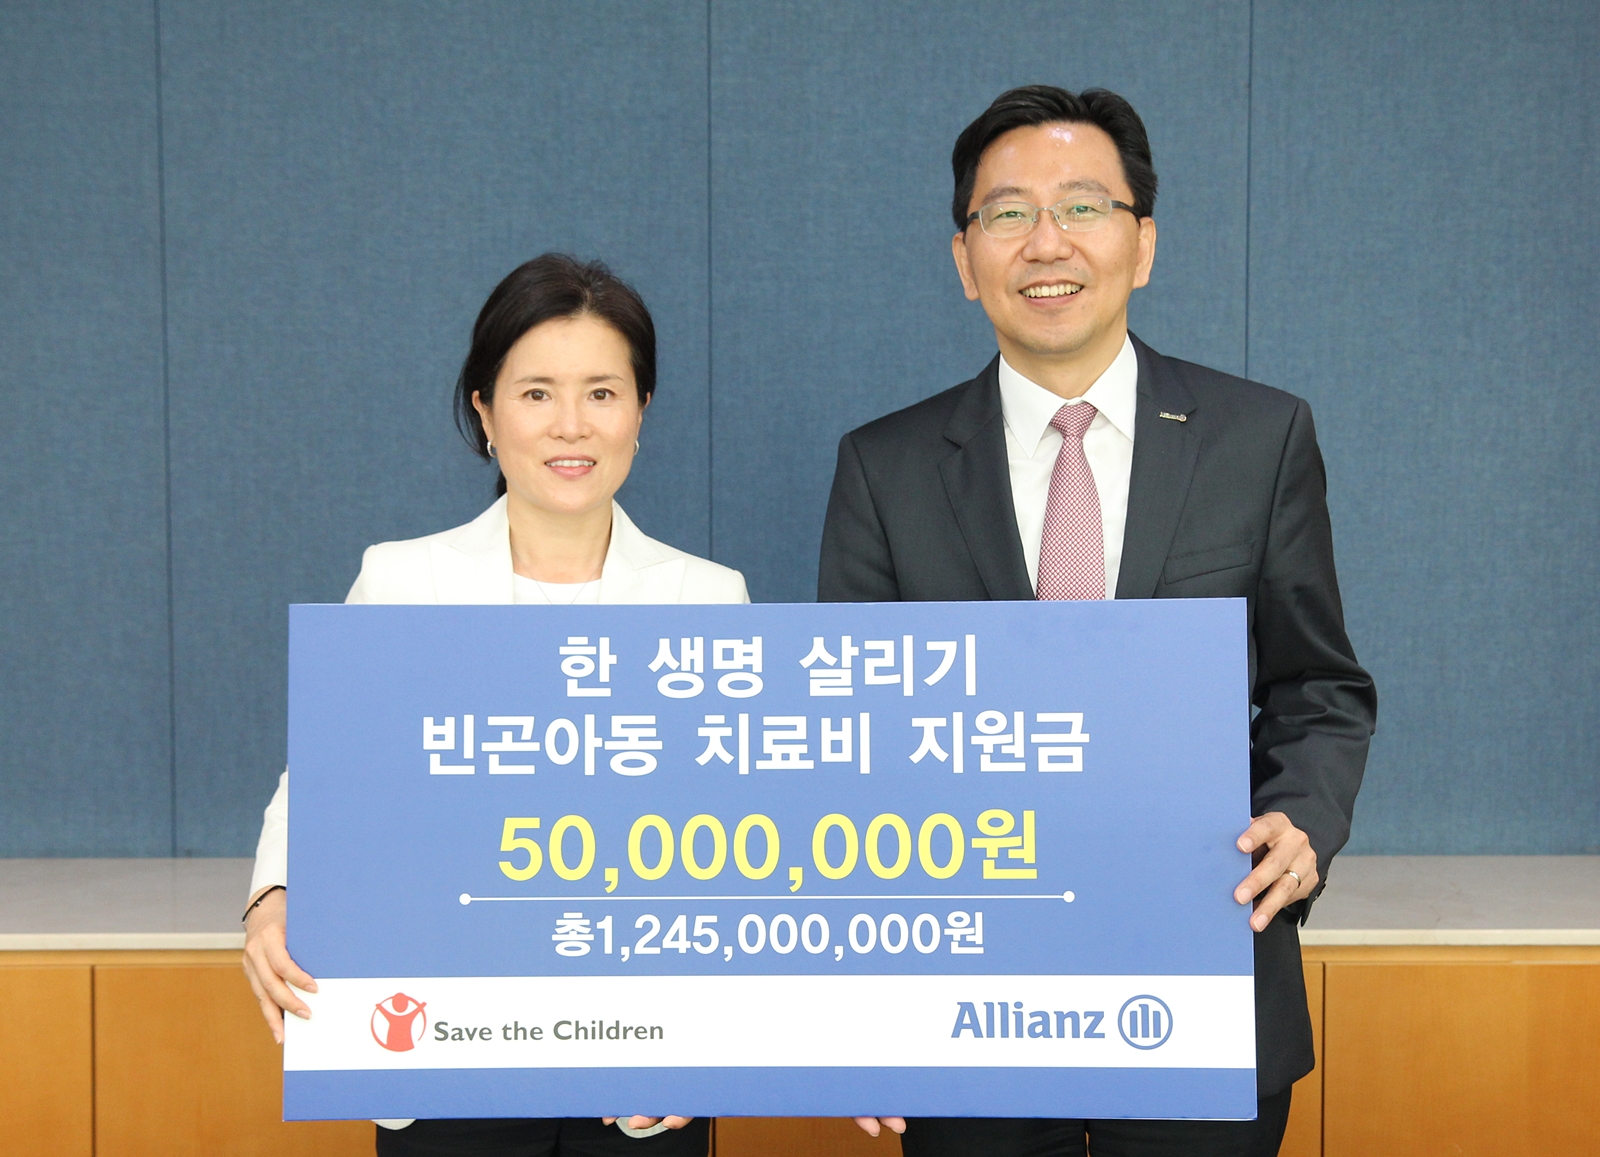 빈곤아동 치료비 5,000만원 전달 [2013-06-21]